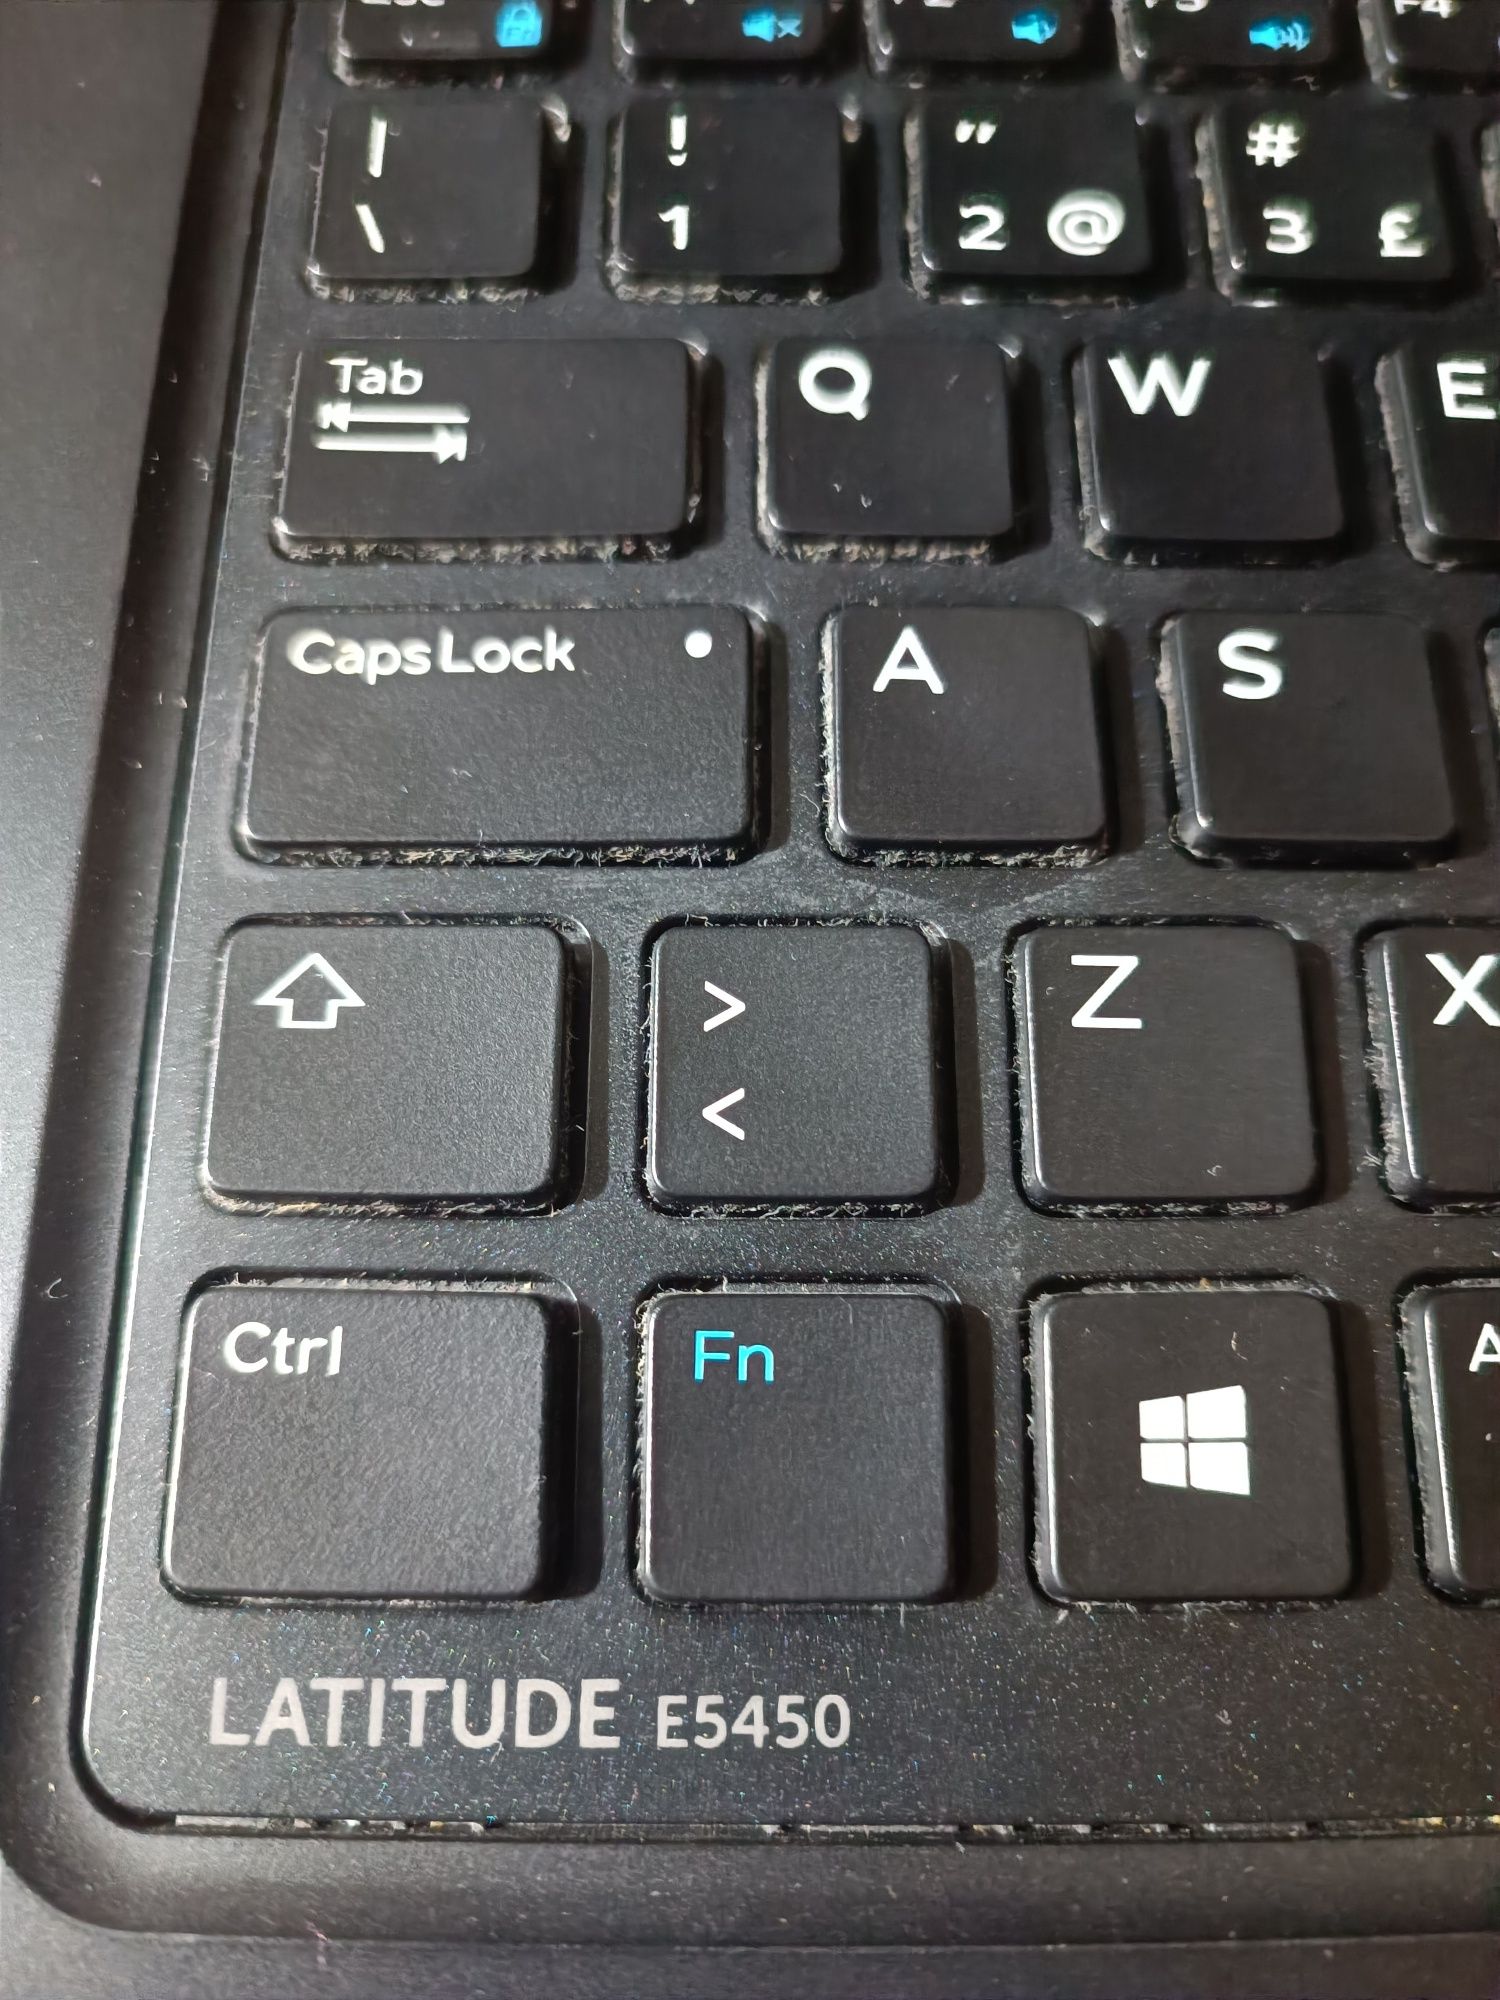 Dell Latitude E5450